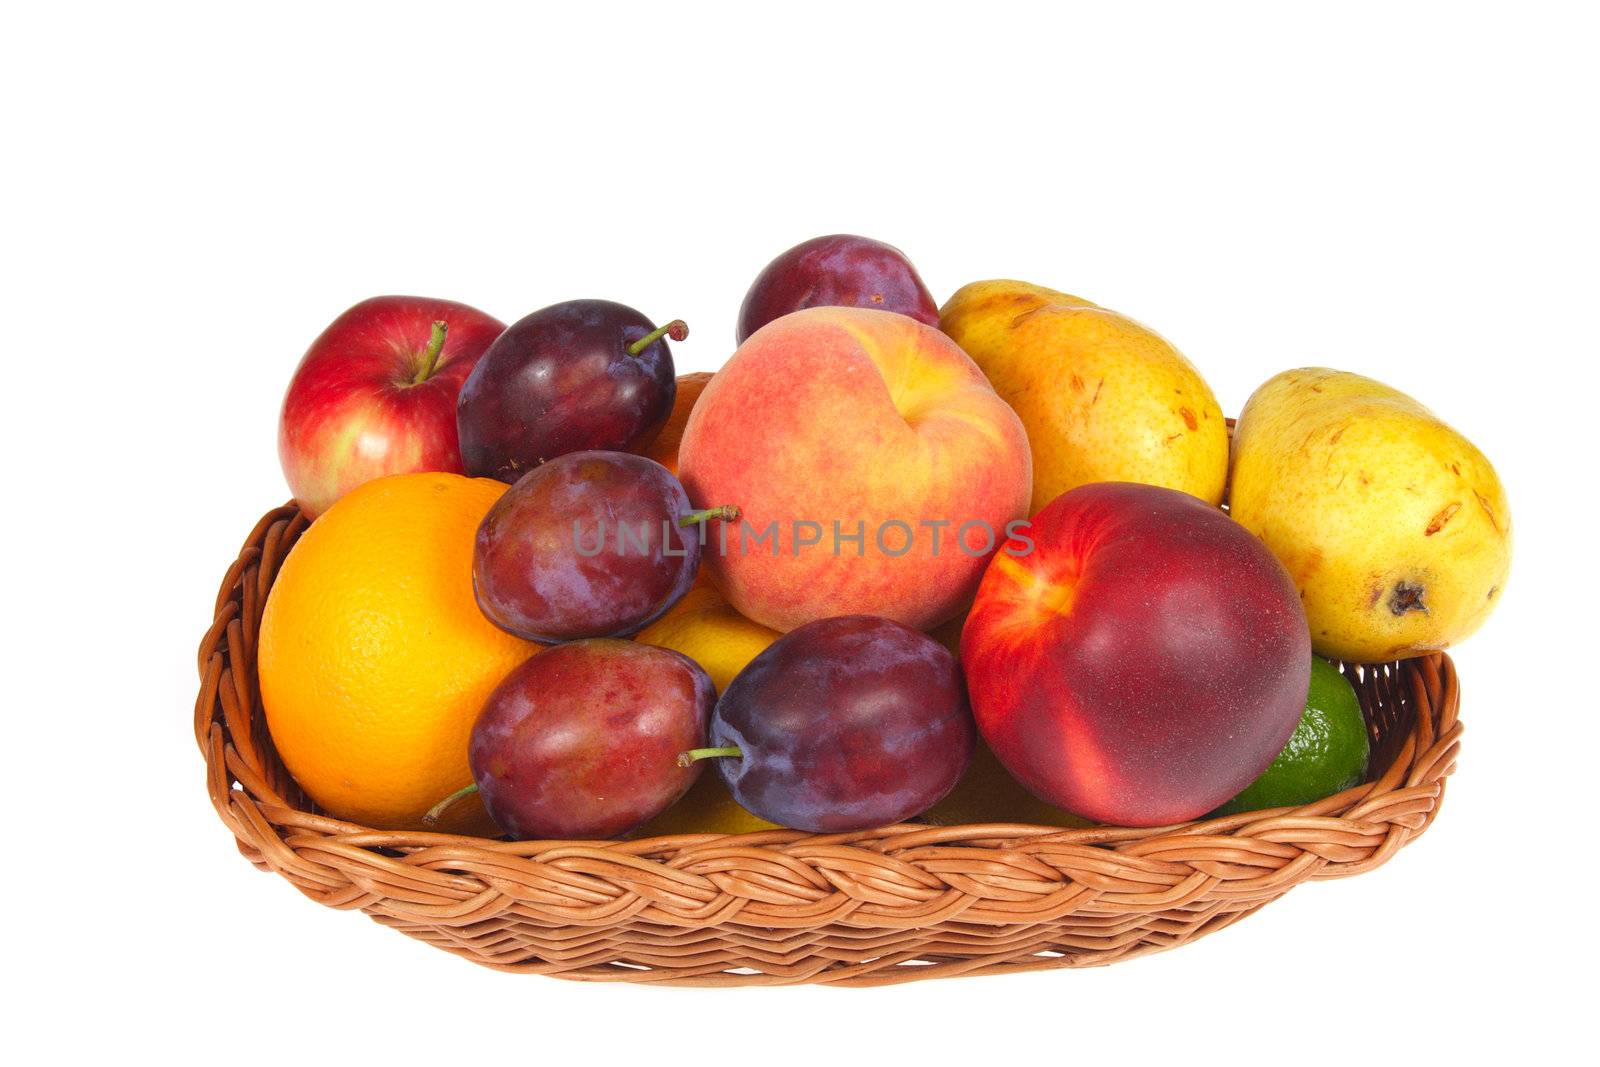 fresh fruits in a basket by aguirre_mar